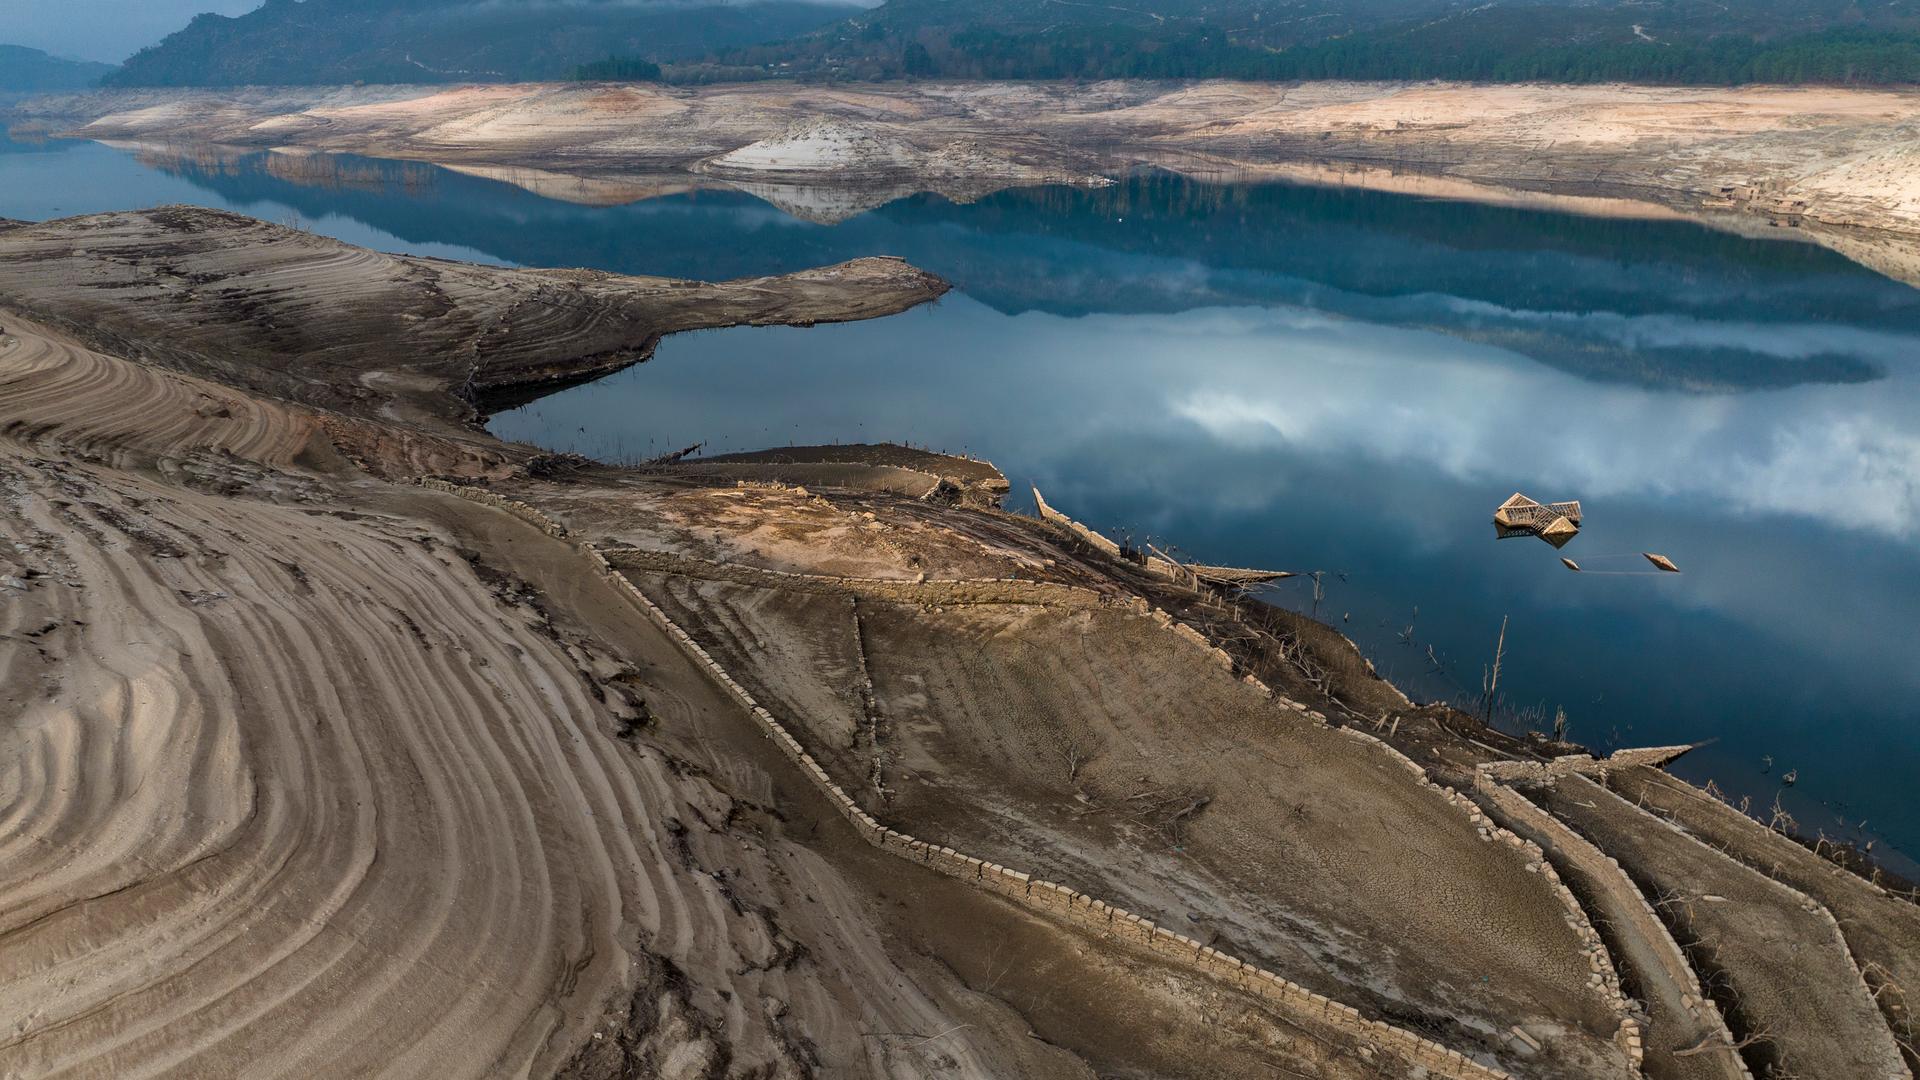 Im Lindoso Reservoir, im Nordwesten Spaniens, hat ein See deutlich Wasser verloren, das Ufer ist ausgetrocknet.